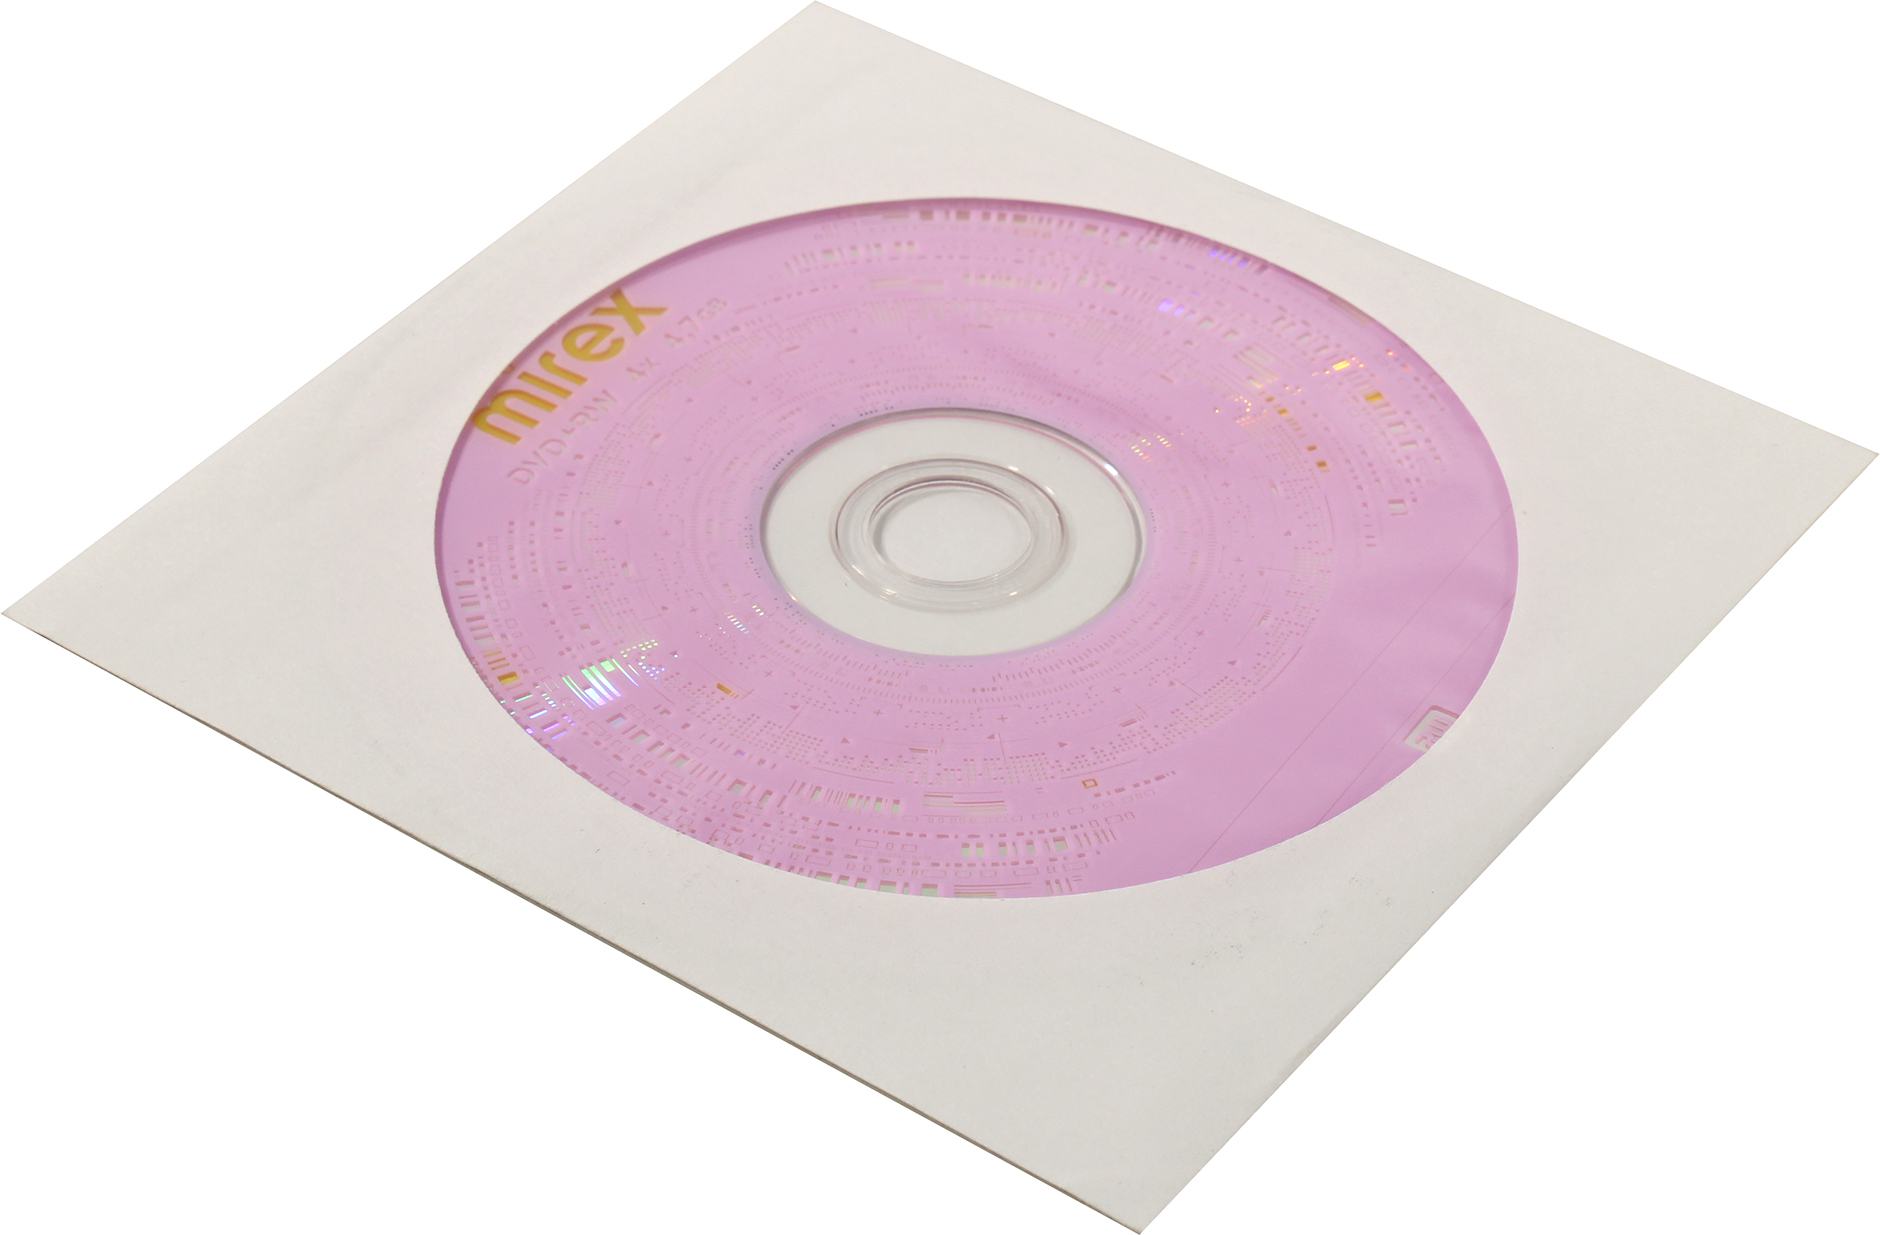 Диск Mirex DVD+RW, 4.7Gb, 4x, бумажный конверт, 1 шт, Printable (050444) - фото 1